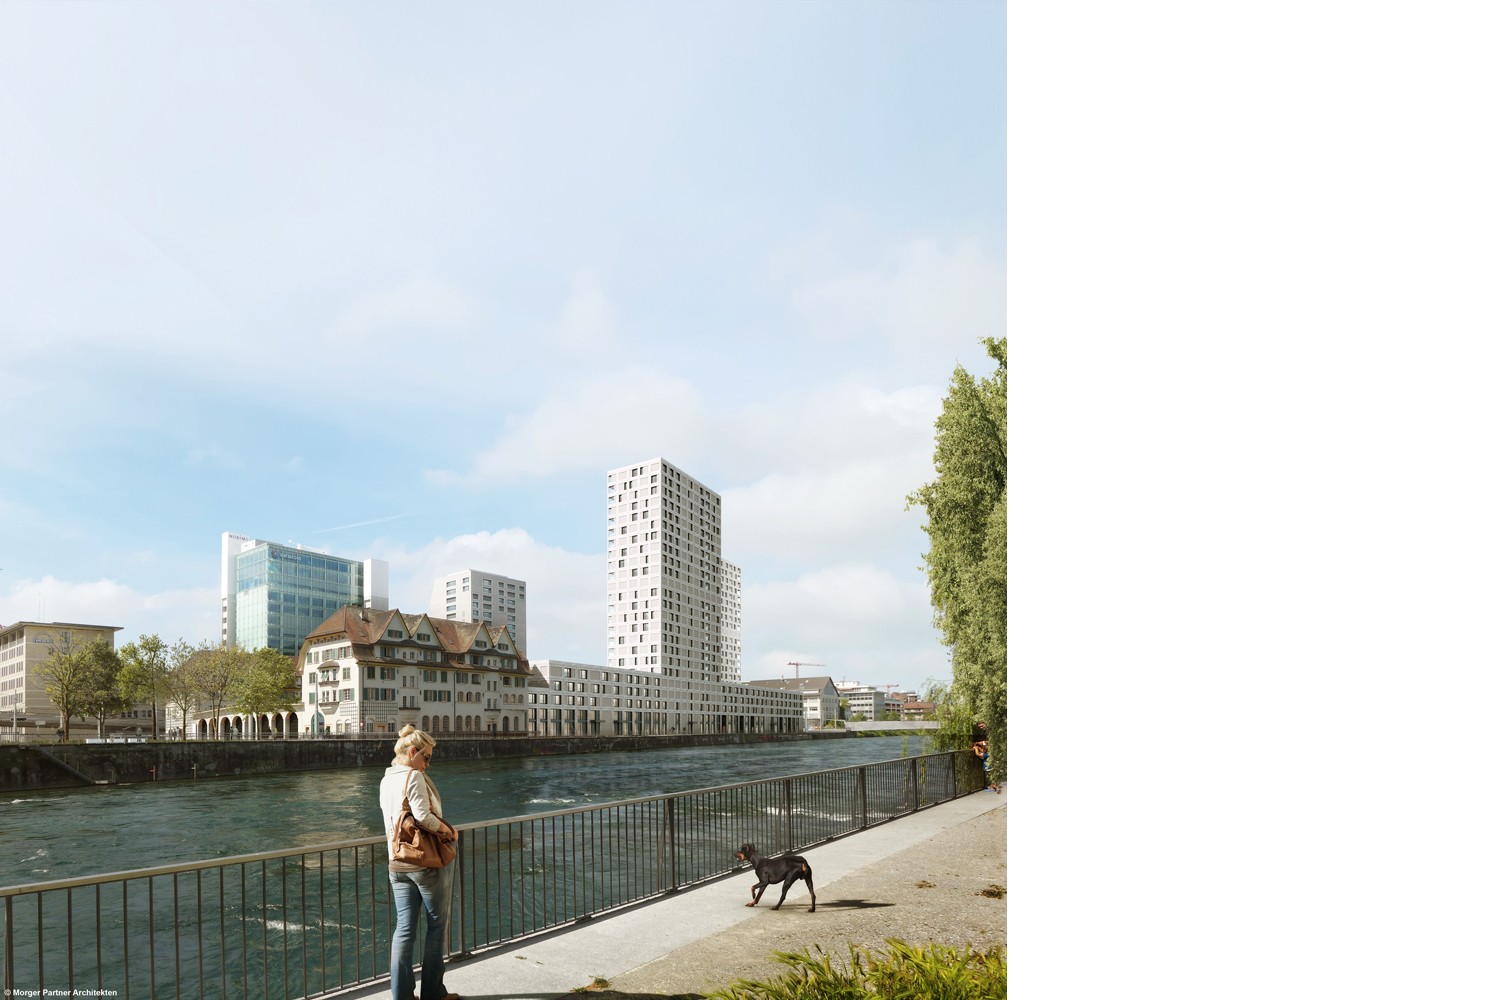 Tramdepot und Wohnsiedlung Depot Hard (Visualisierung © Morger Partner Architekten, Basel)